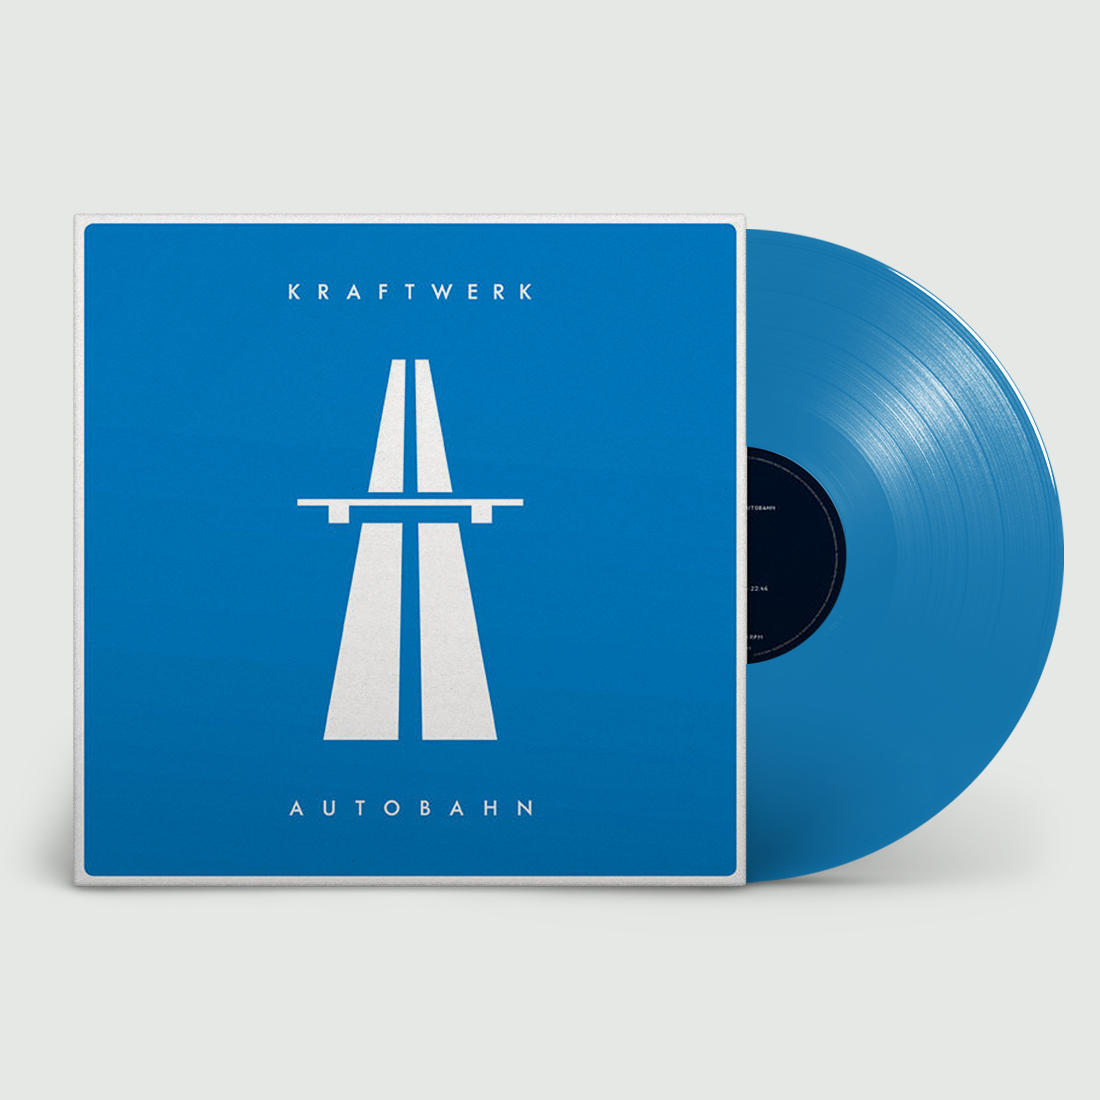 Kraftwerk - Autobahn: Limited Edition Translucent Blue Vinyl LP.